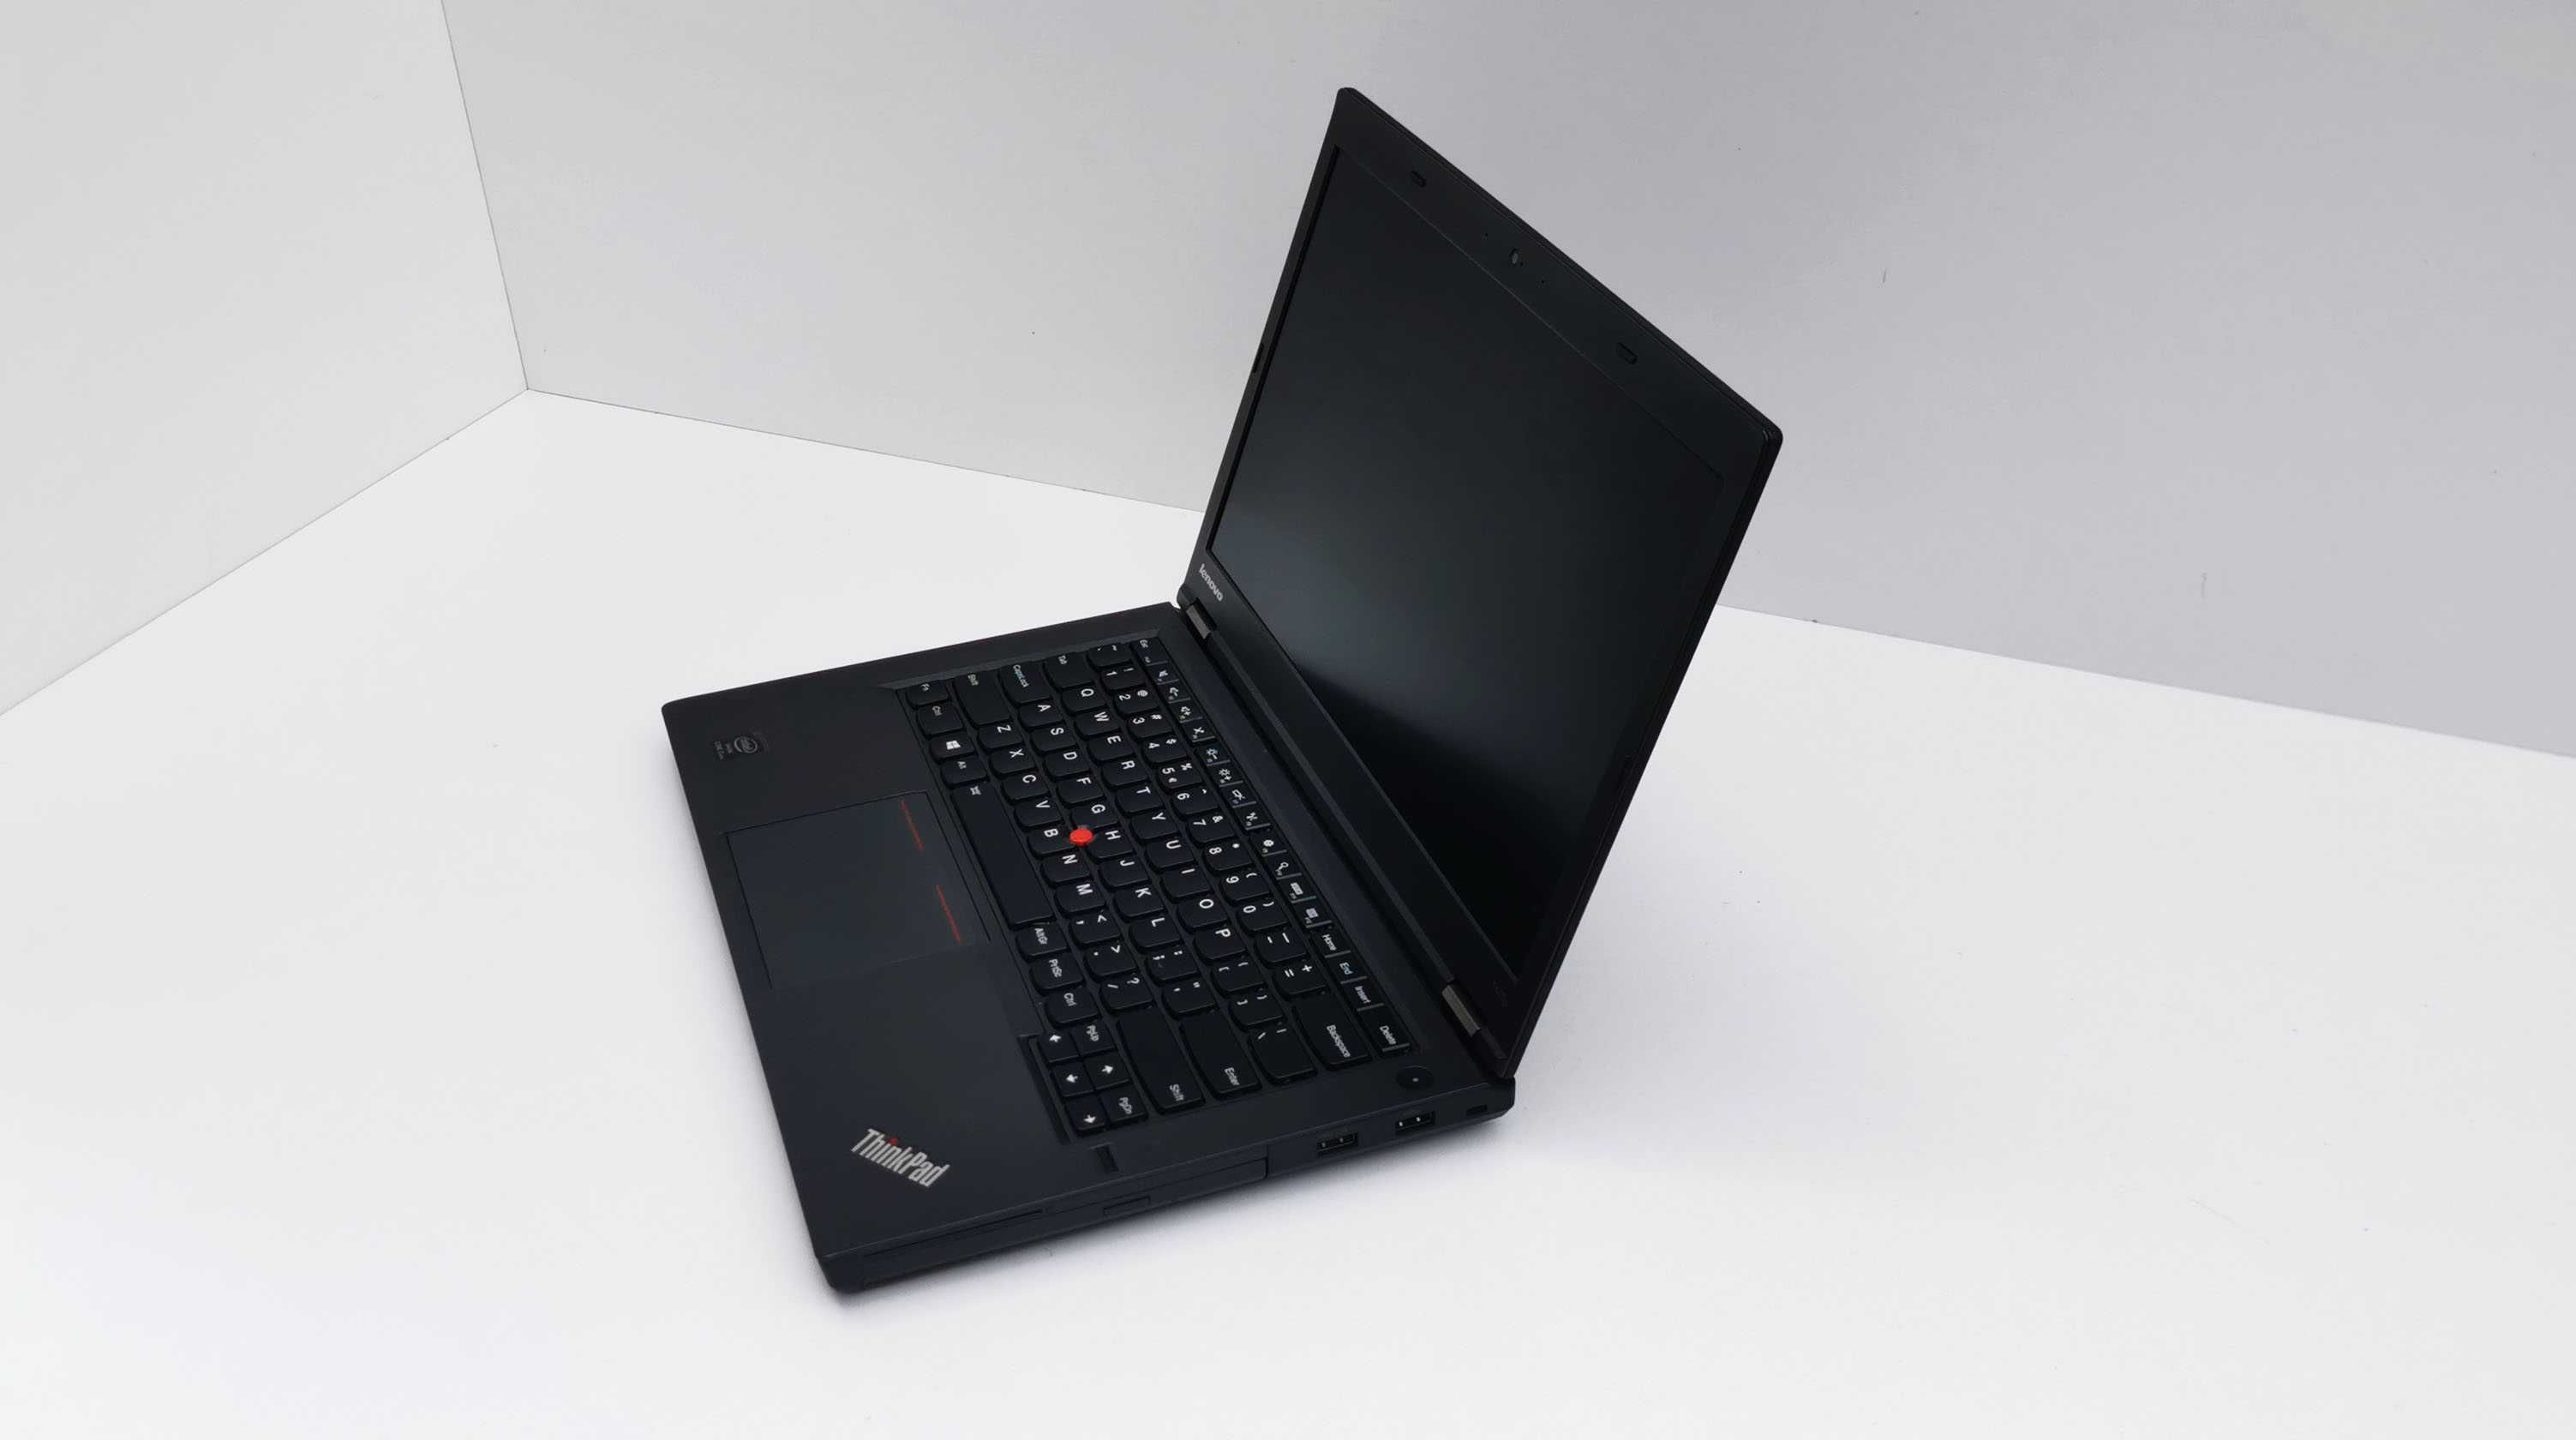 Lenovo ThinkPad T440p intel i7 4600M 8 GB RAM 256 GB SSD